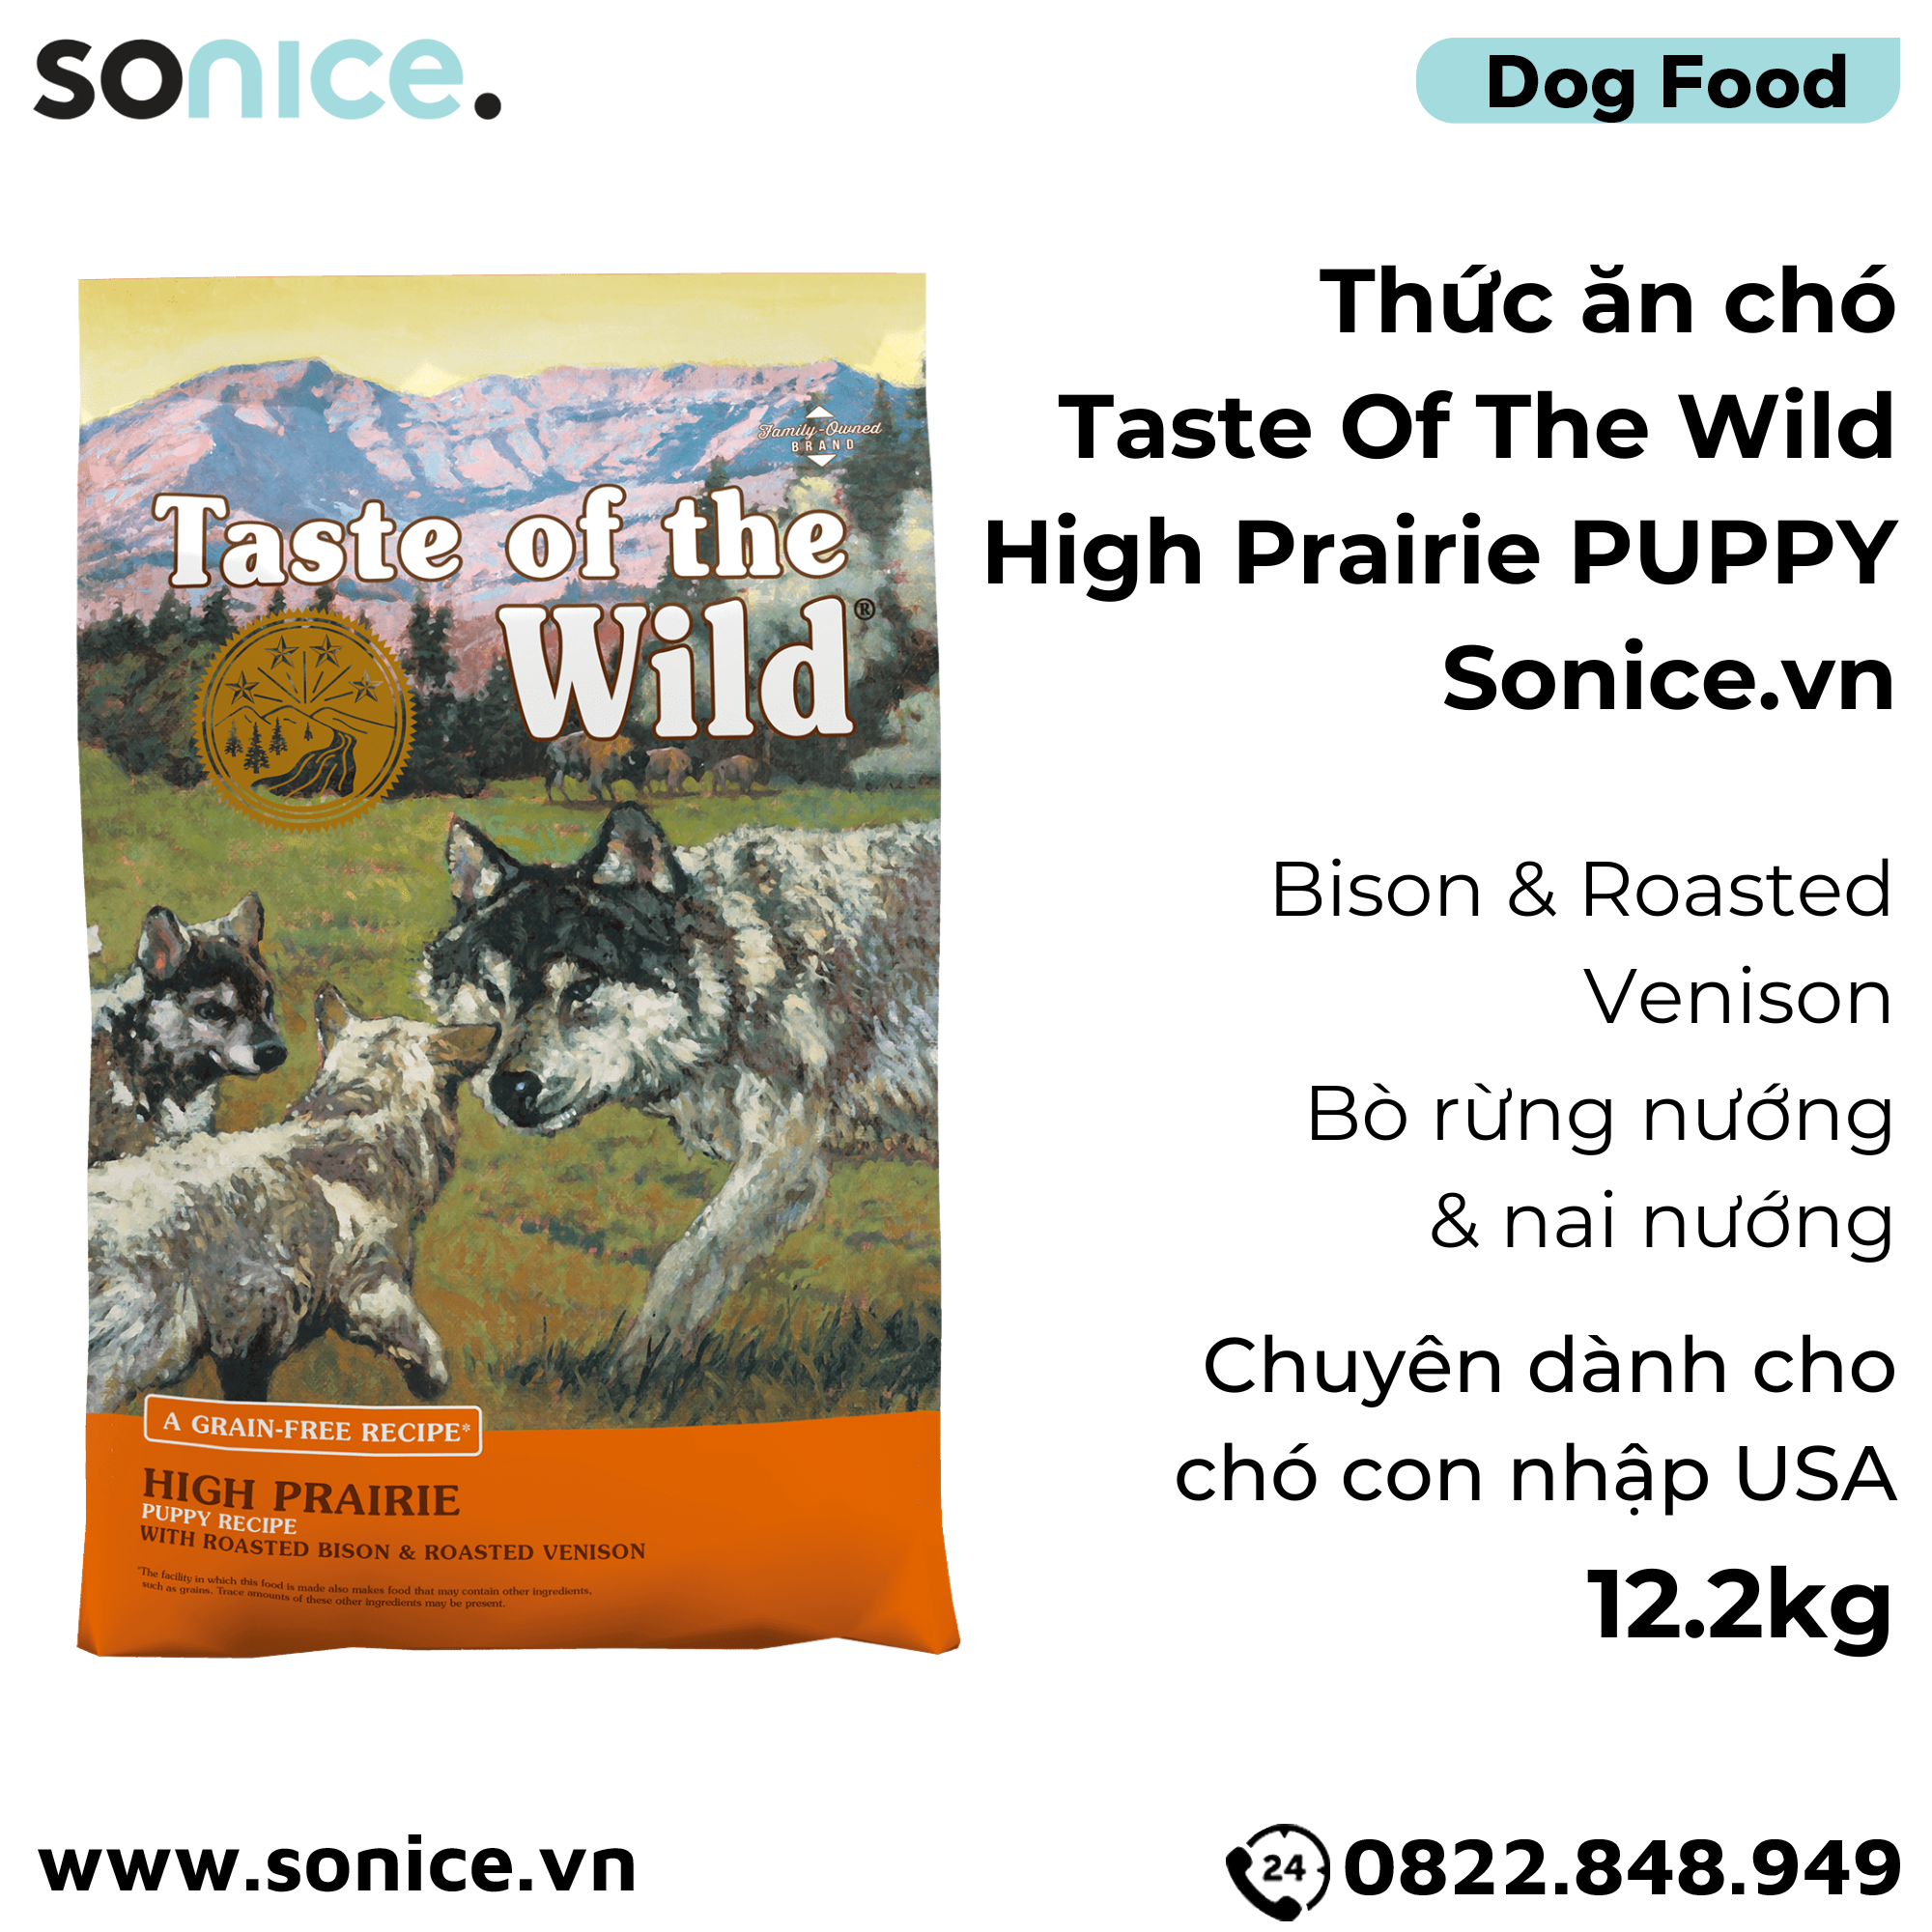  Thức ăn chó Taste Of The Wild High Prairie PUPPY 12.2kg - Bison & Roasted Venison, Bò Rừng Nướng & Nai Nướng, chuyên chó con - nhập USA SONICE. 